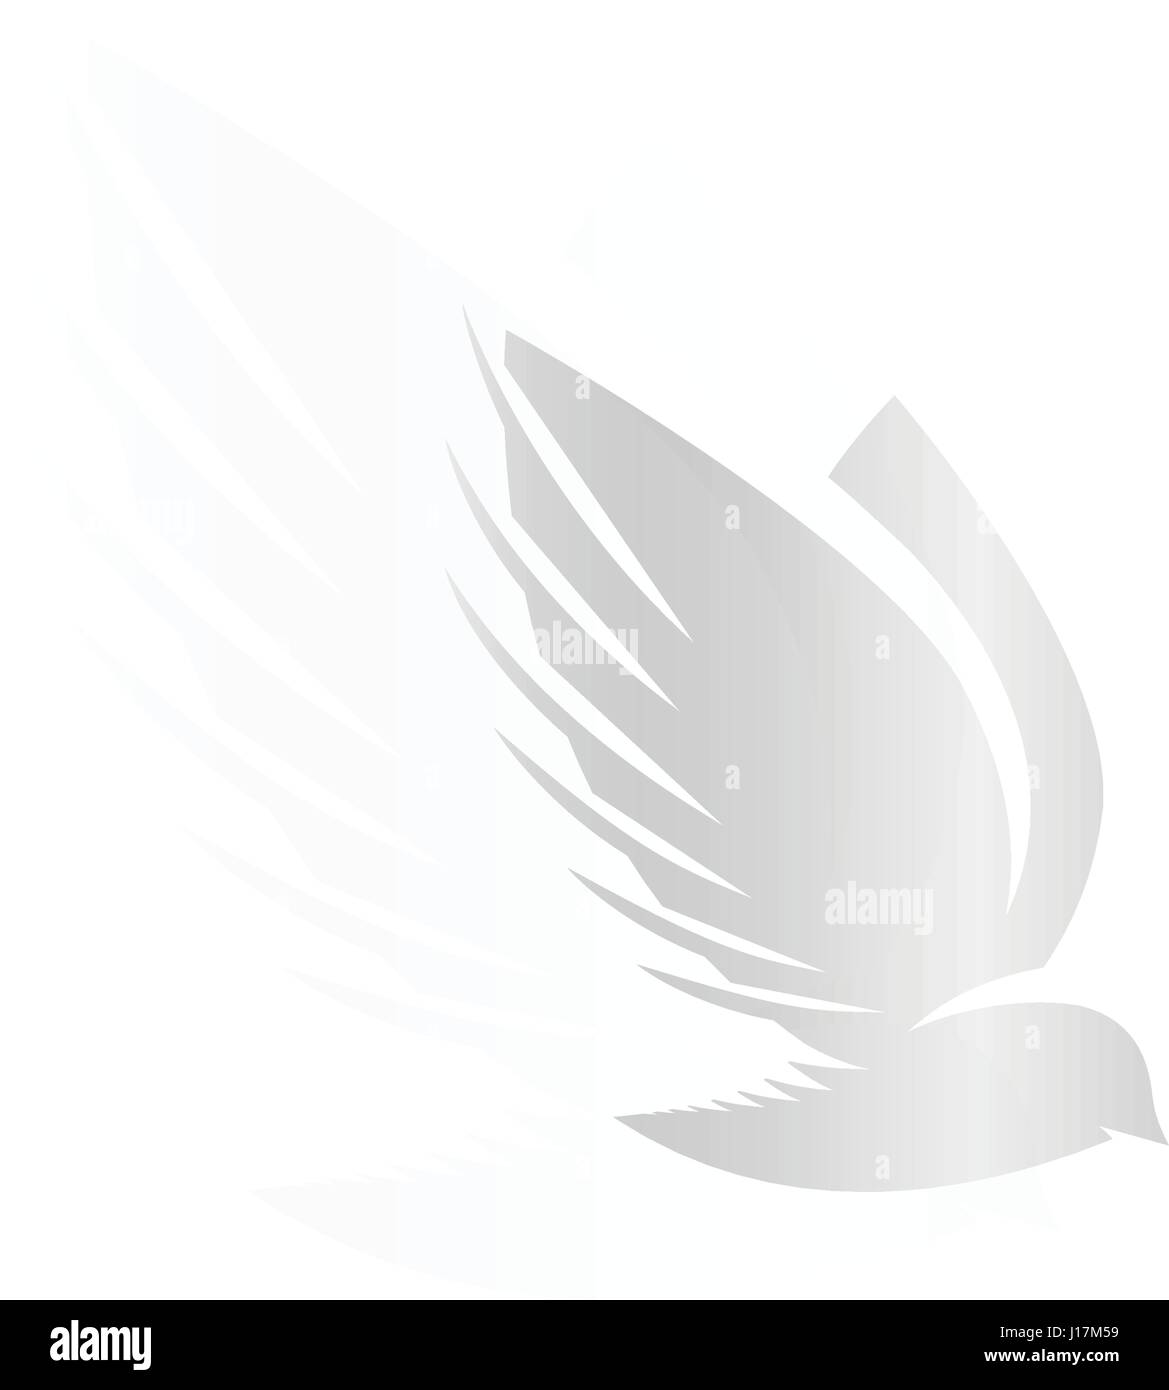 Abstract isolato color argento uccelli sagome logo su sfondo bianco, le ali di piume e logotipo elementi imposta illustrazione vettoriale Illustrazione Vettoriale